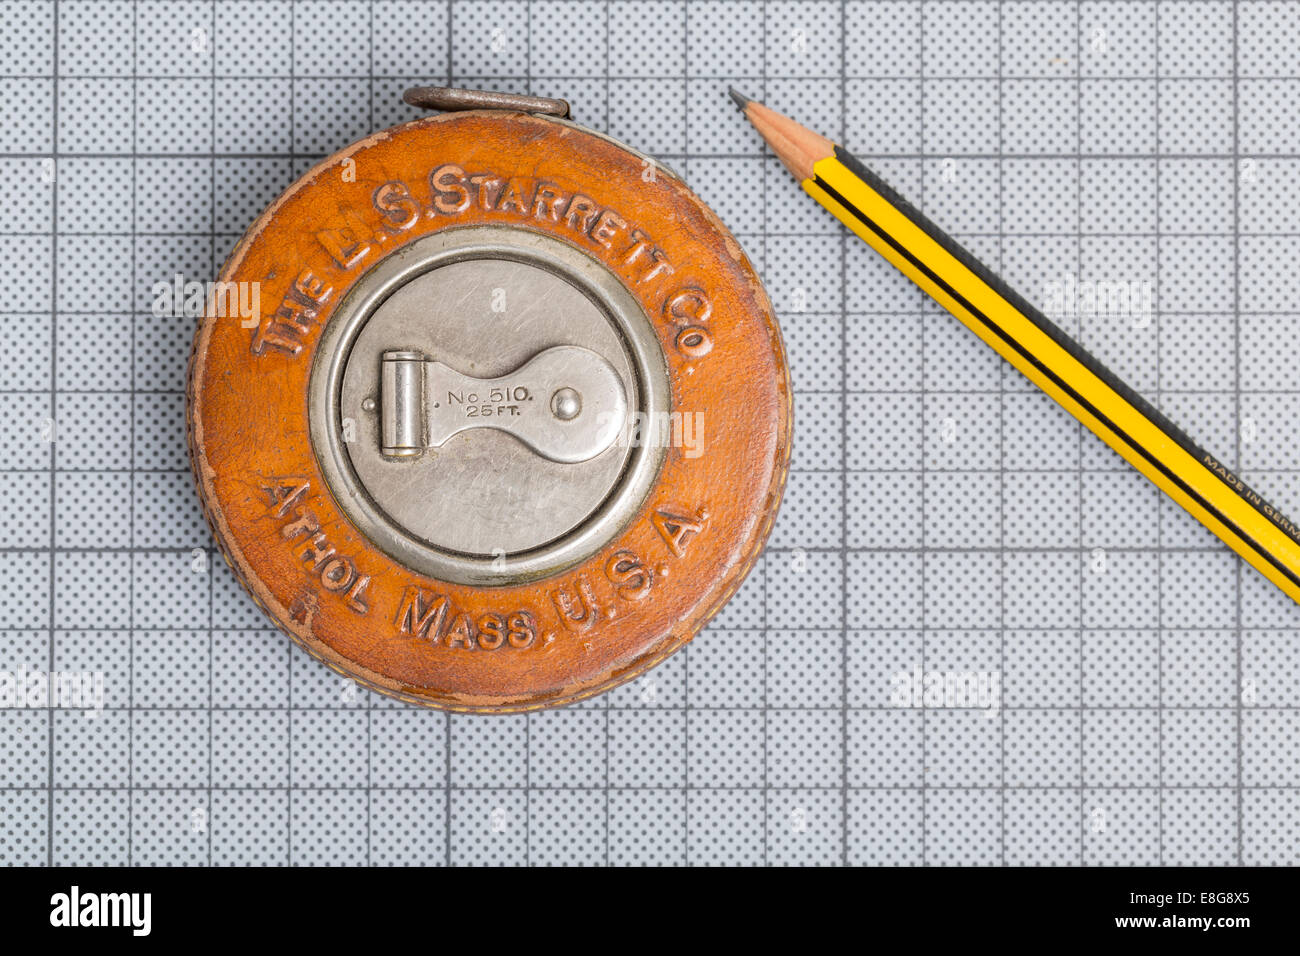 Agrimensor cinta métrica o regla formulada por L. S. Starrett, Athol,  Massachusetts, Estados Unidos Fotografía de stock - Alamy